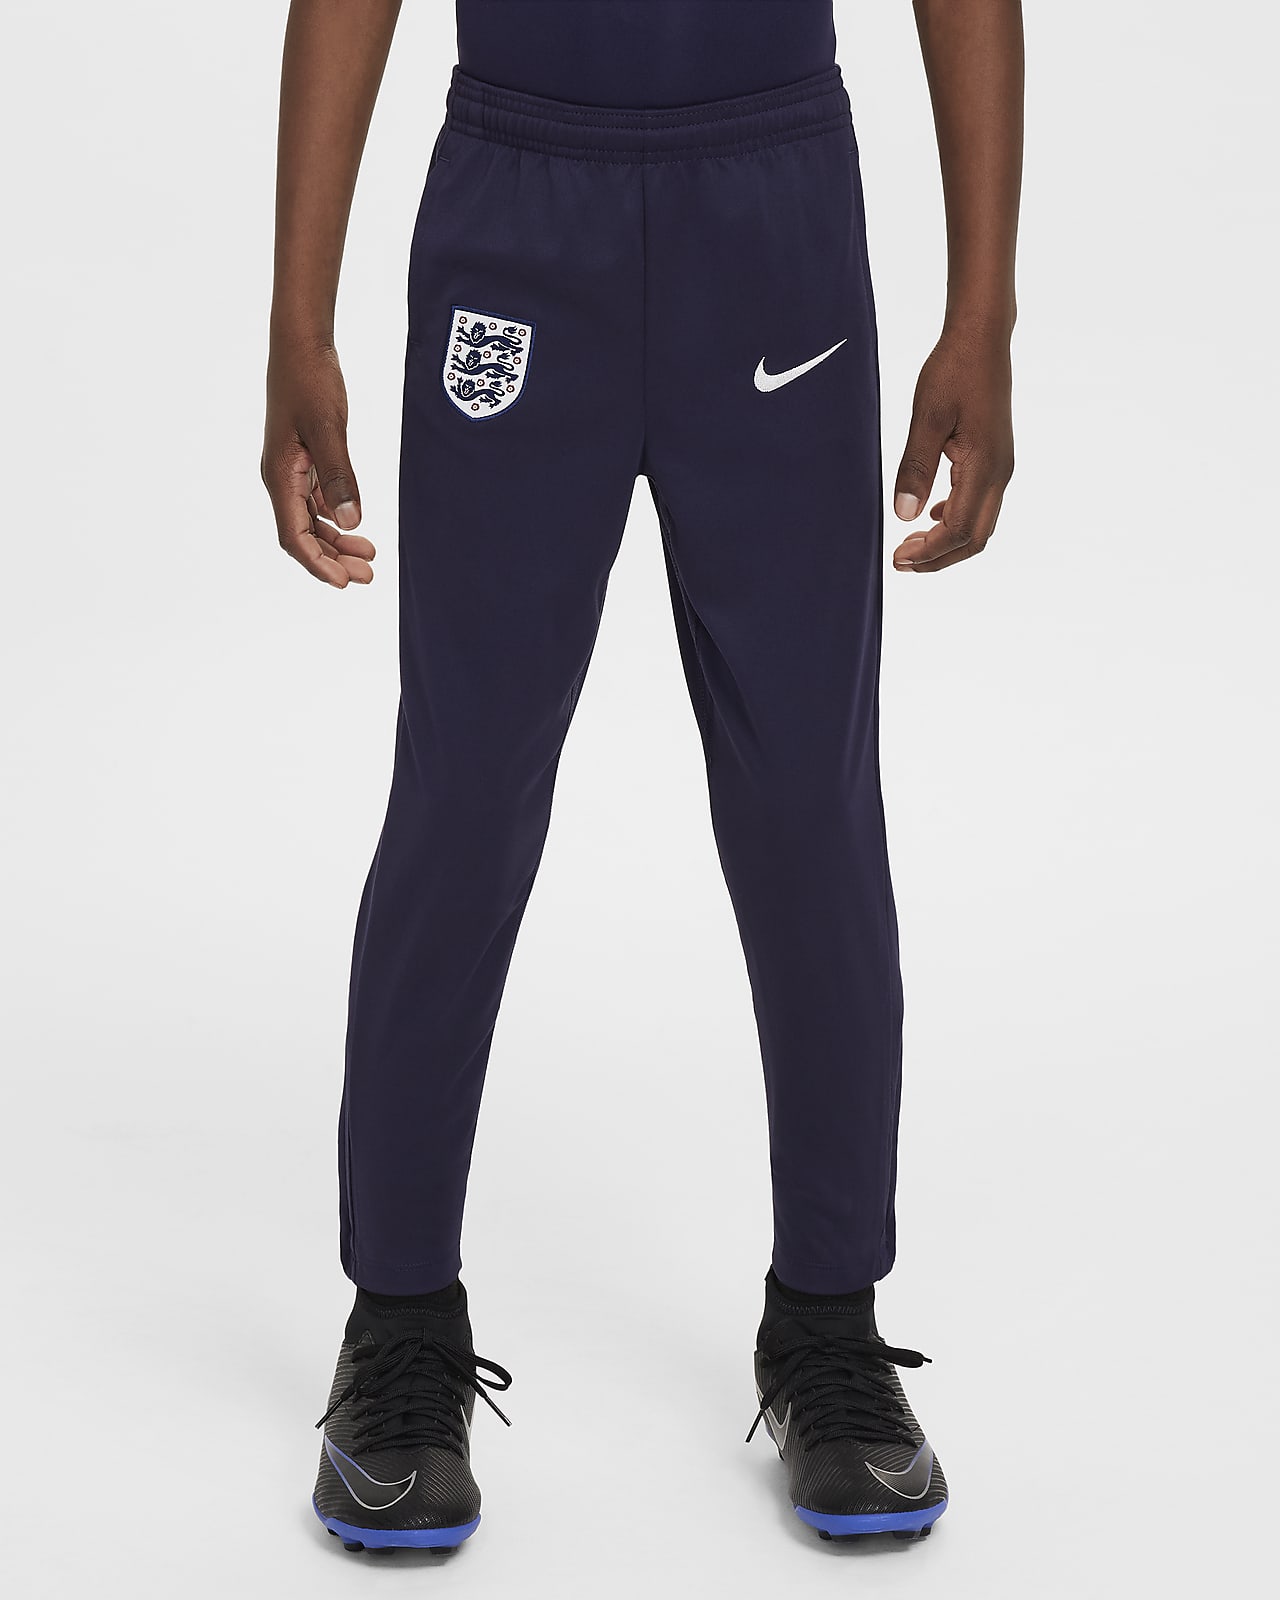 Engeland Academy Pro Nike Dri-FIT knit voetbalbroek voor kleuters